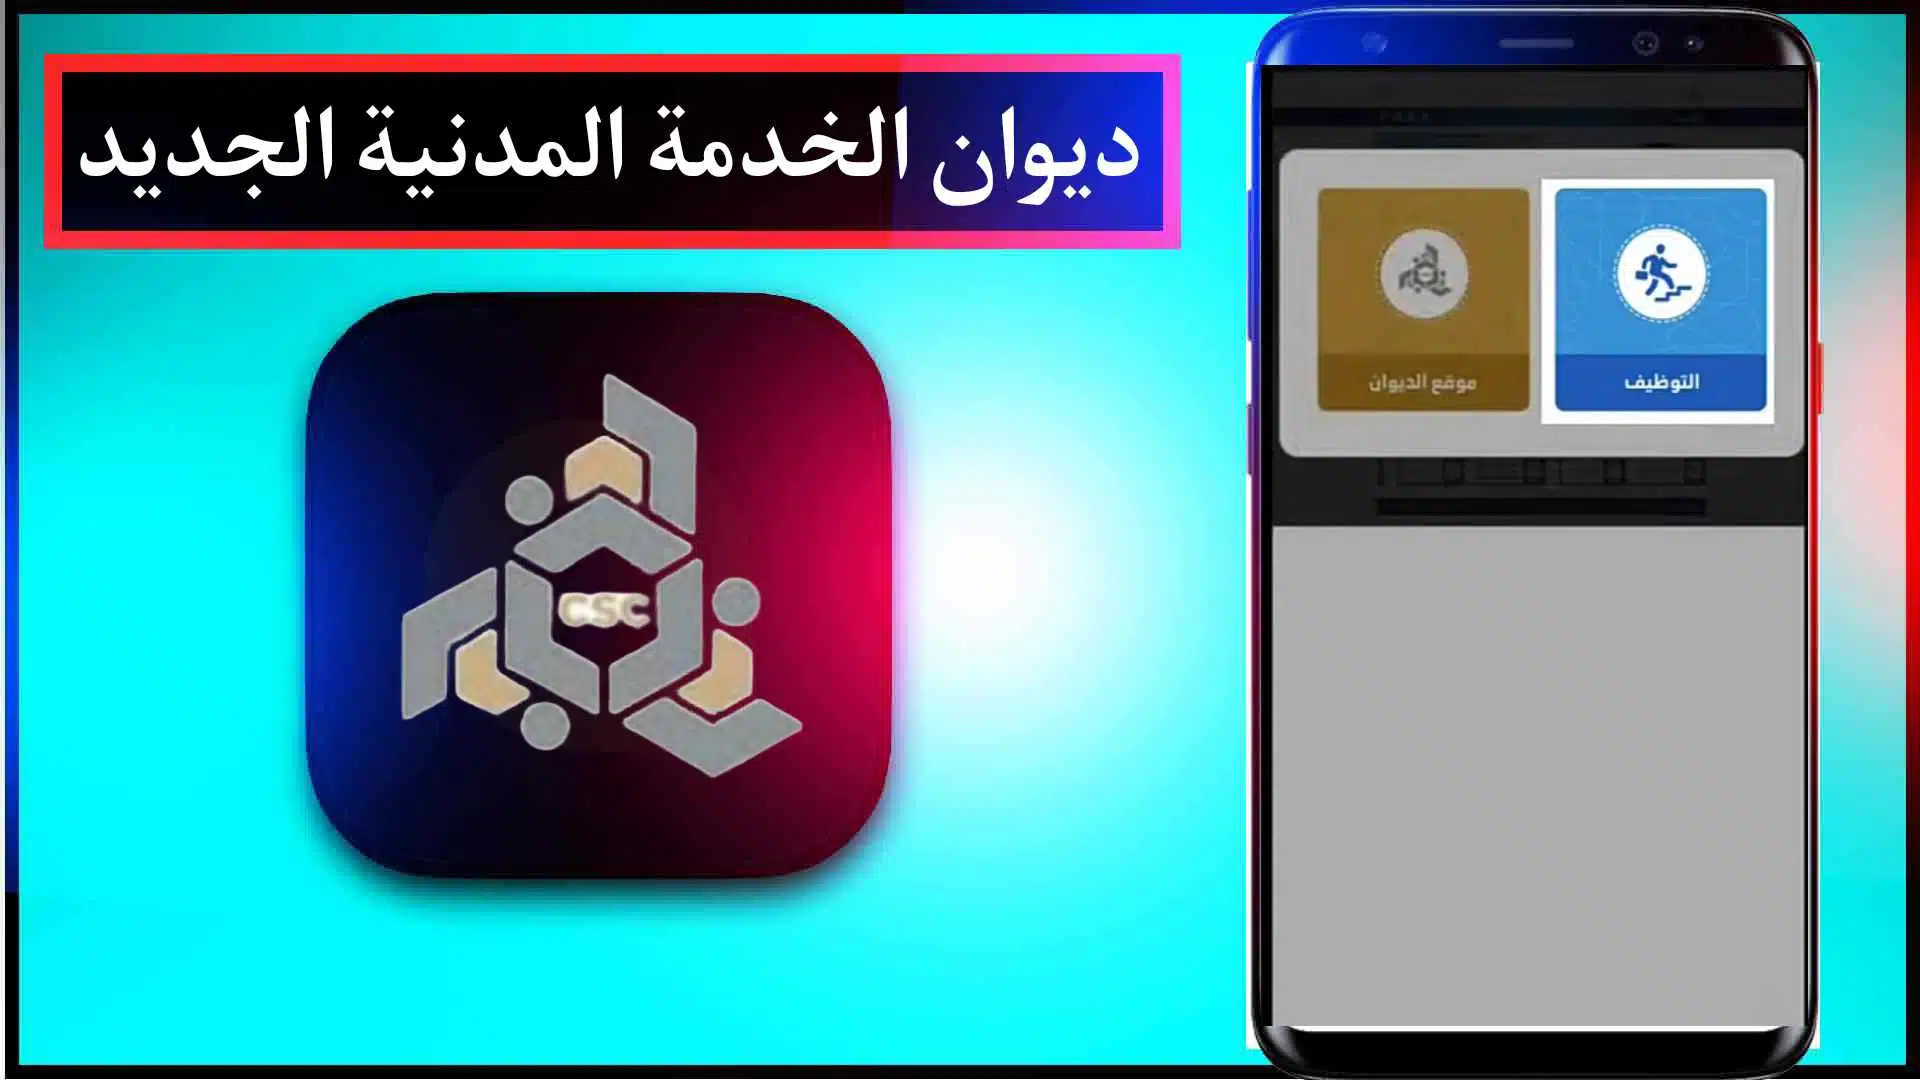 موقع ديوان الخدمه المدنية الجديد الكويت وتسجيل الدخول مجانا 2